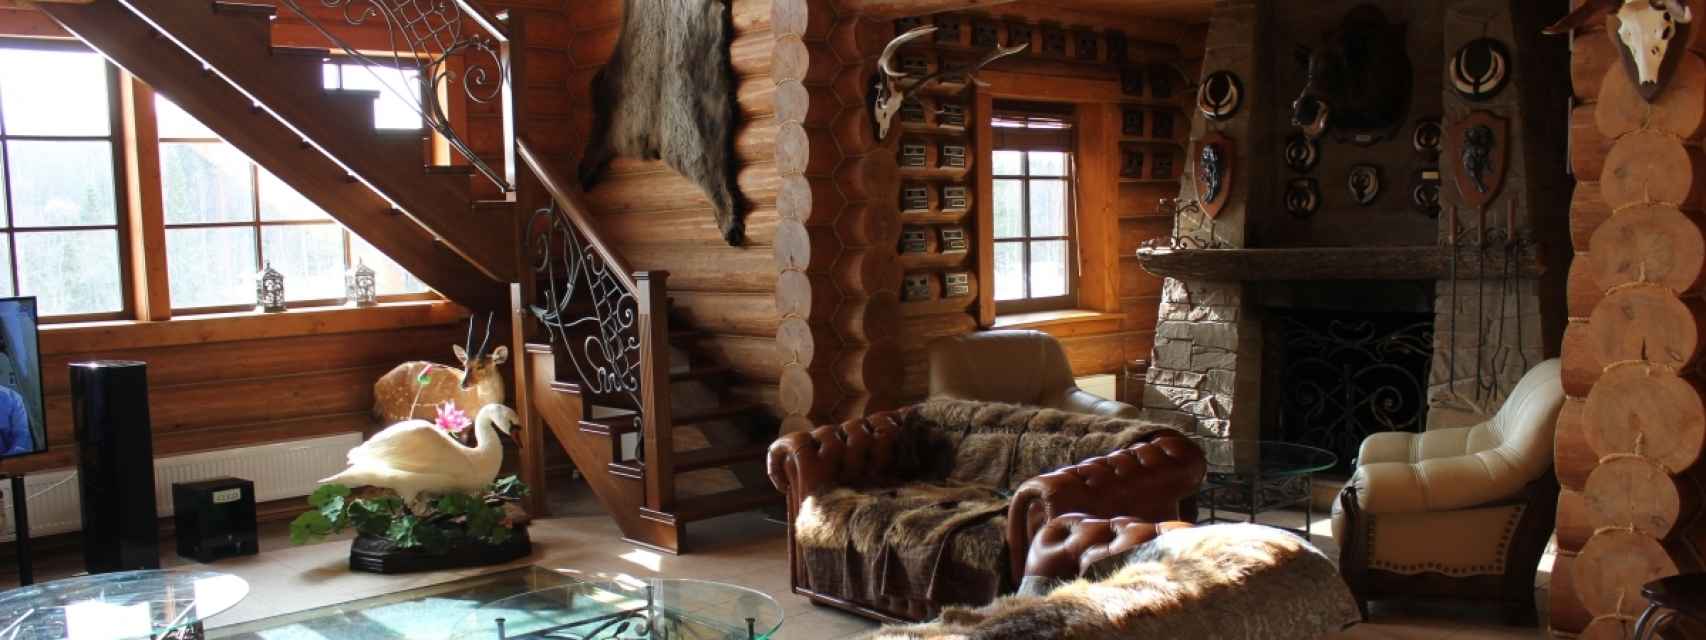 Salón del hotel en el Parque Nacional del Norte Ruso donde se alojaron Juan Carlos I y Corinna Larsen.